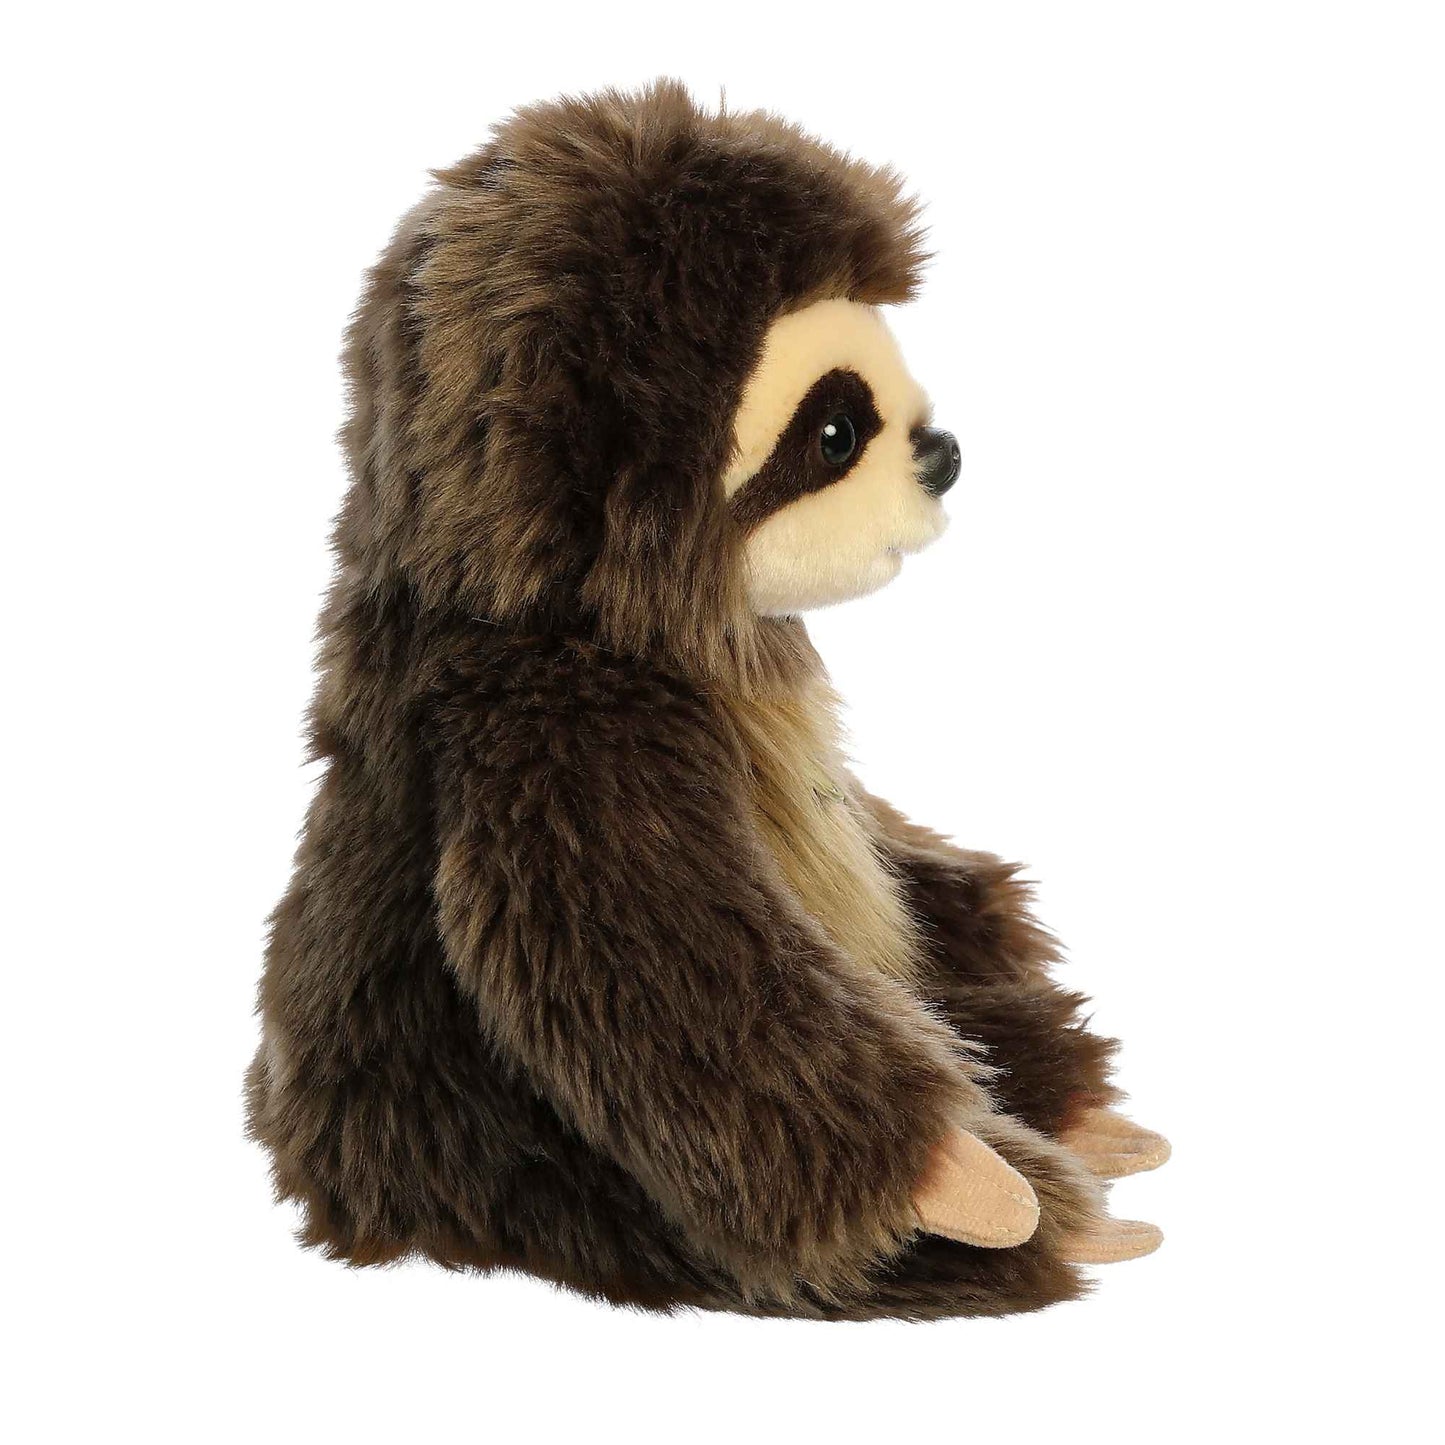 Miyoni Baby Sloth 8.5"